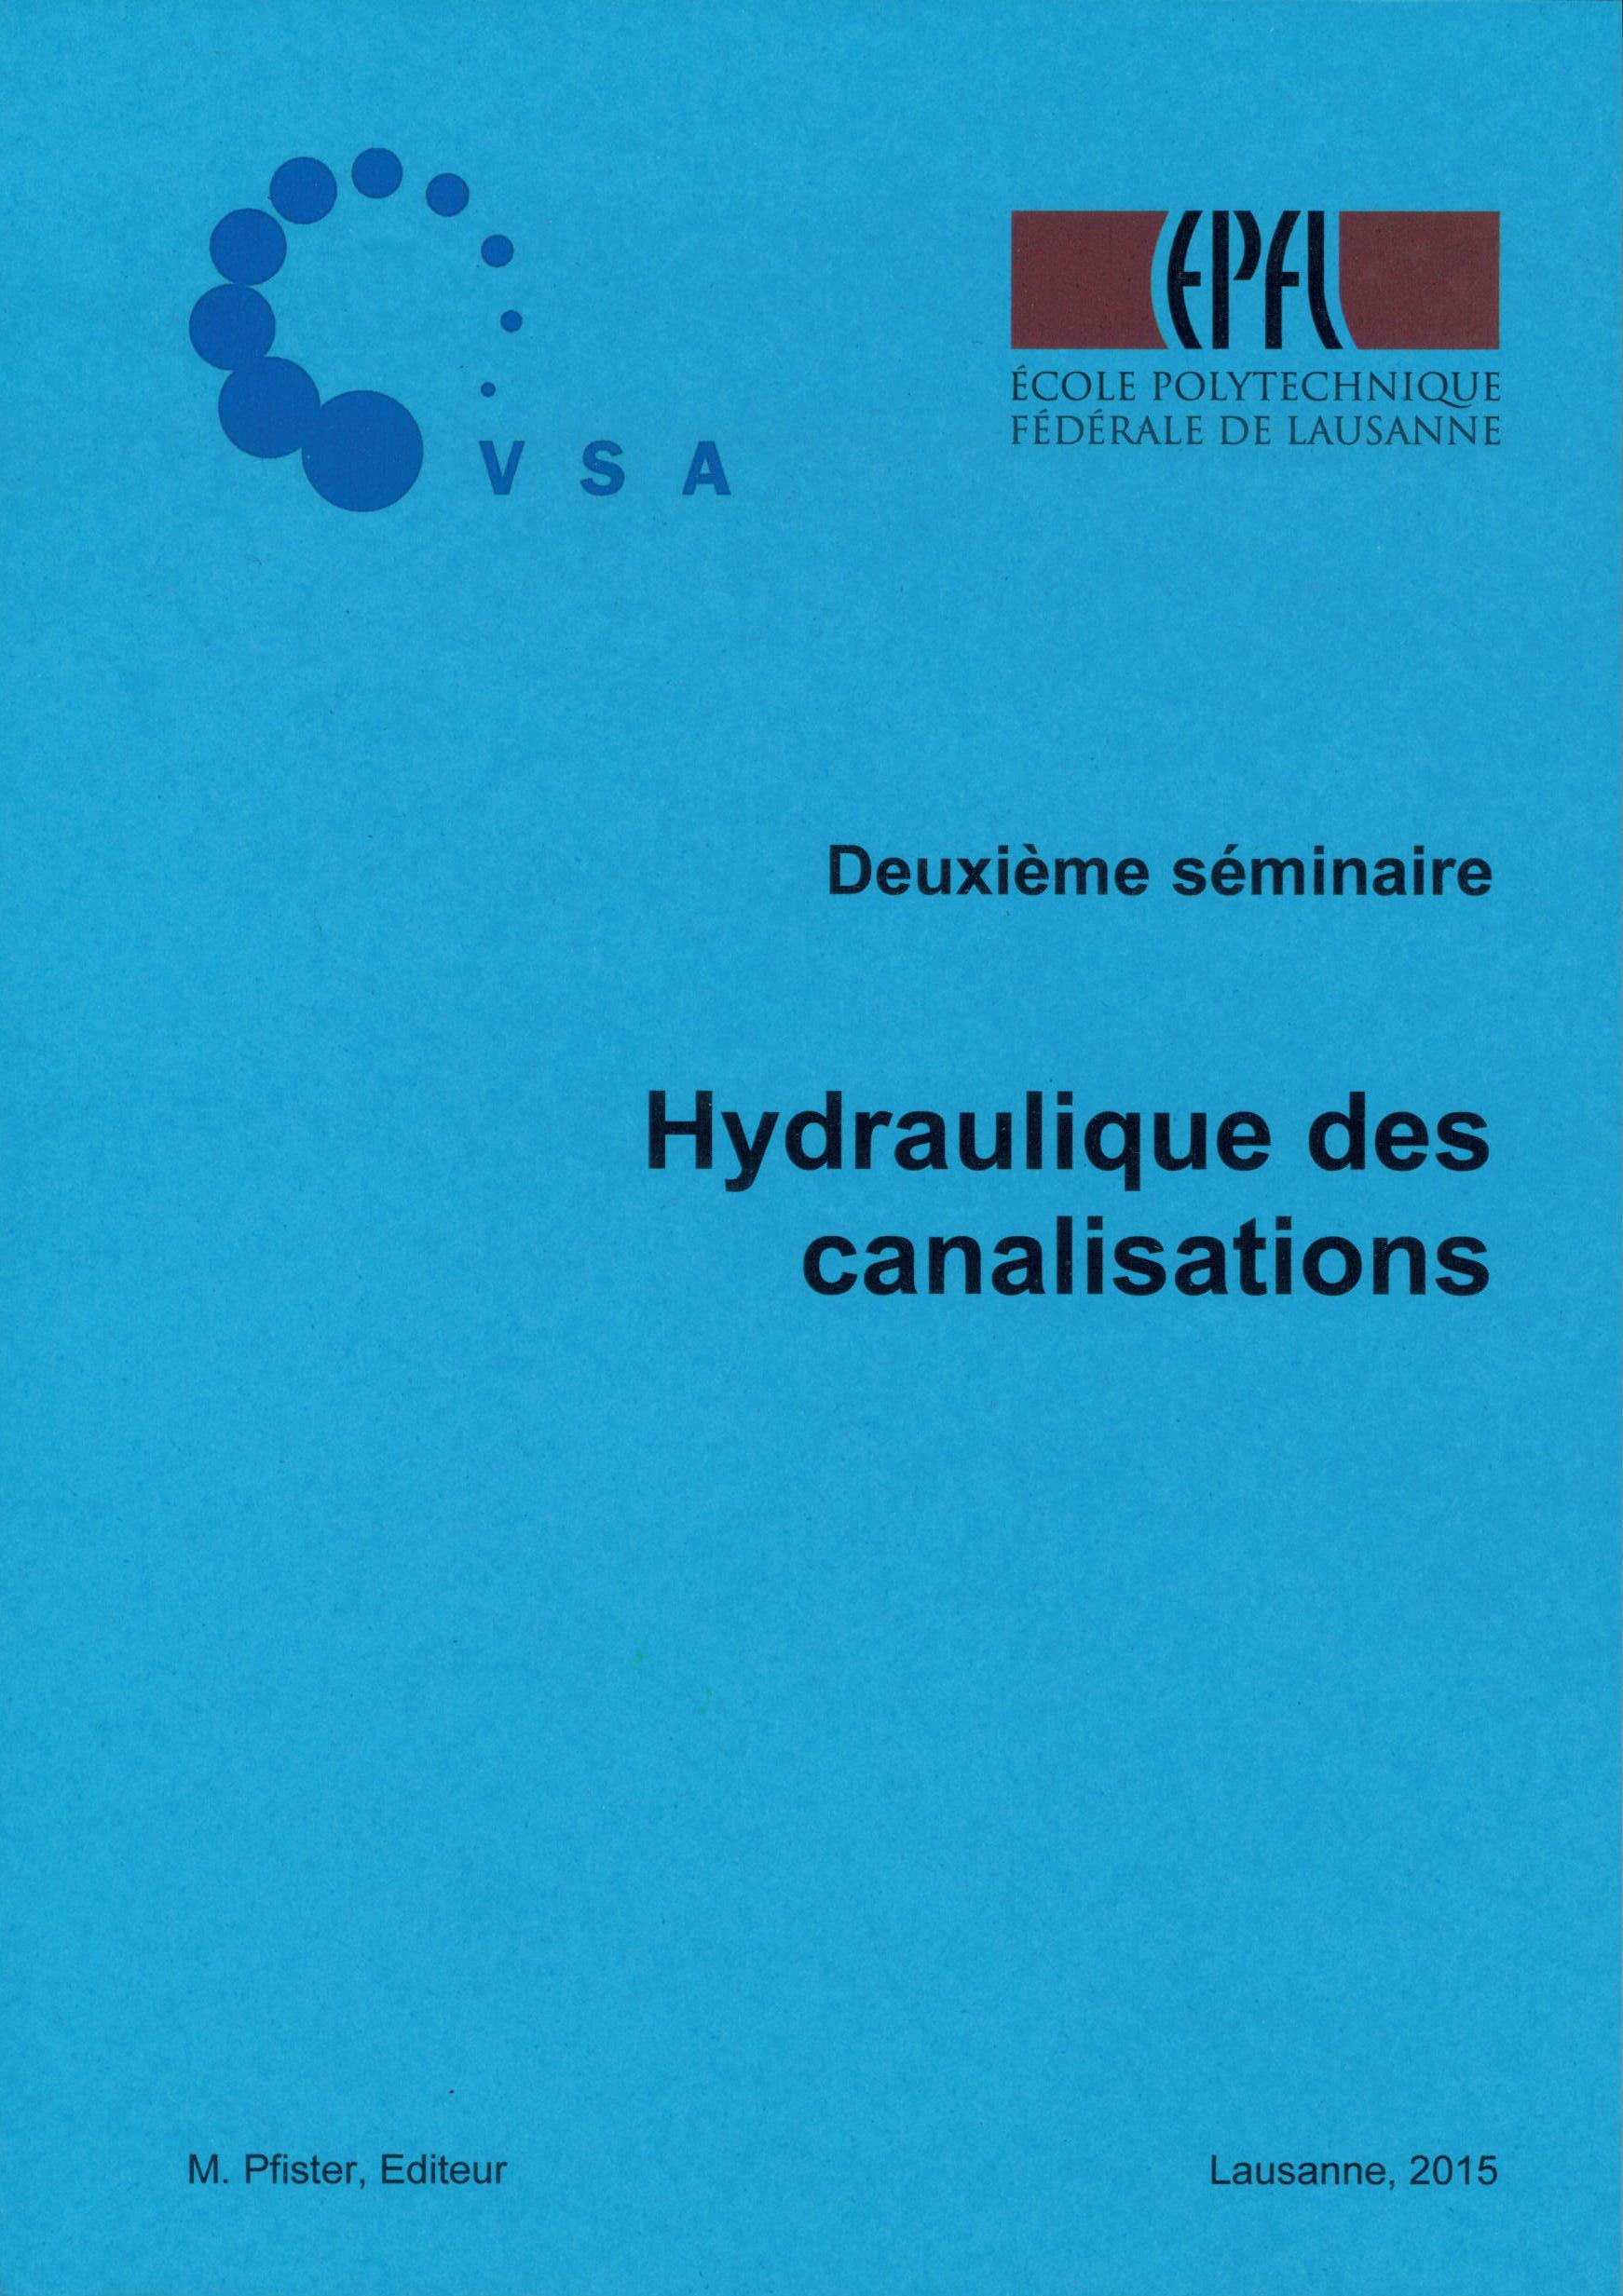 Hydraulique des canalisations Deuxième séminaire, 2015